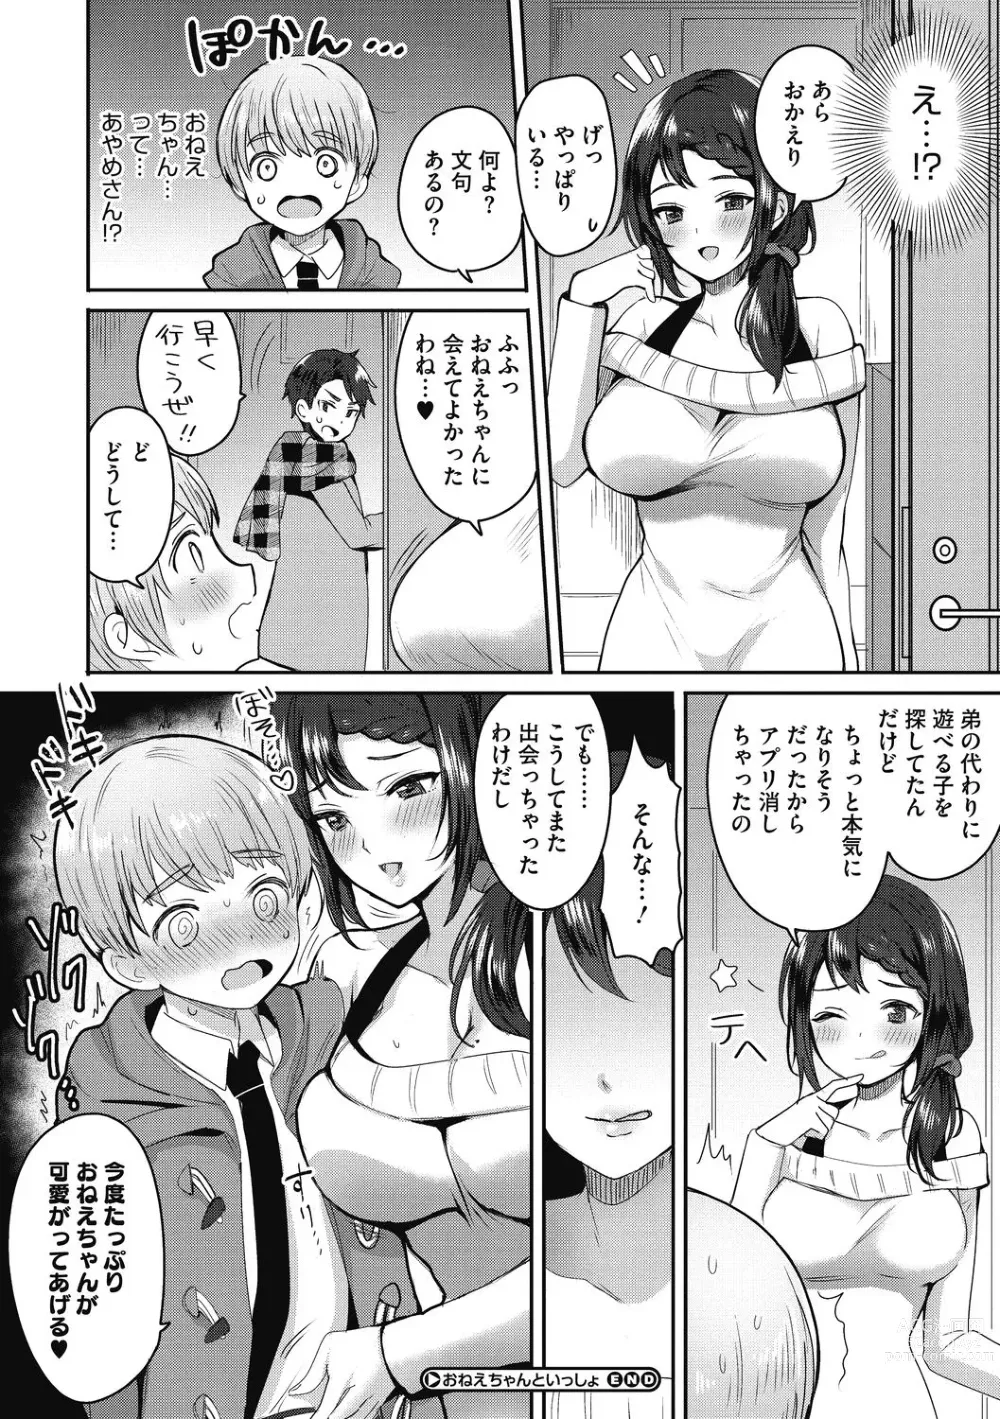 Page 206 of manga OneShota Nama Haishinchuu!